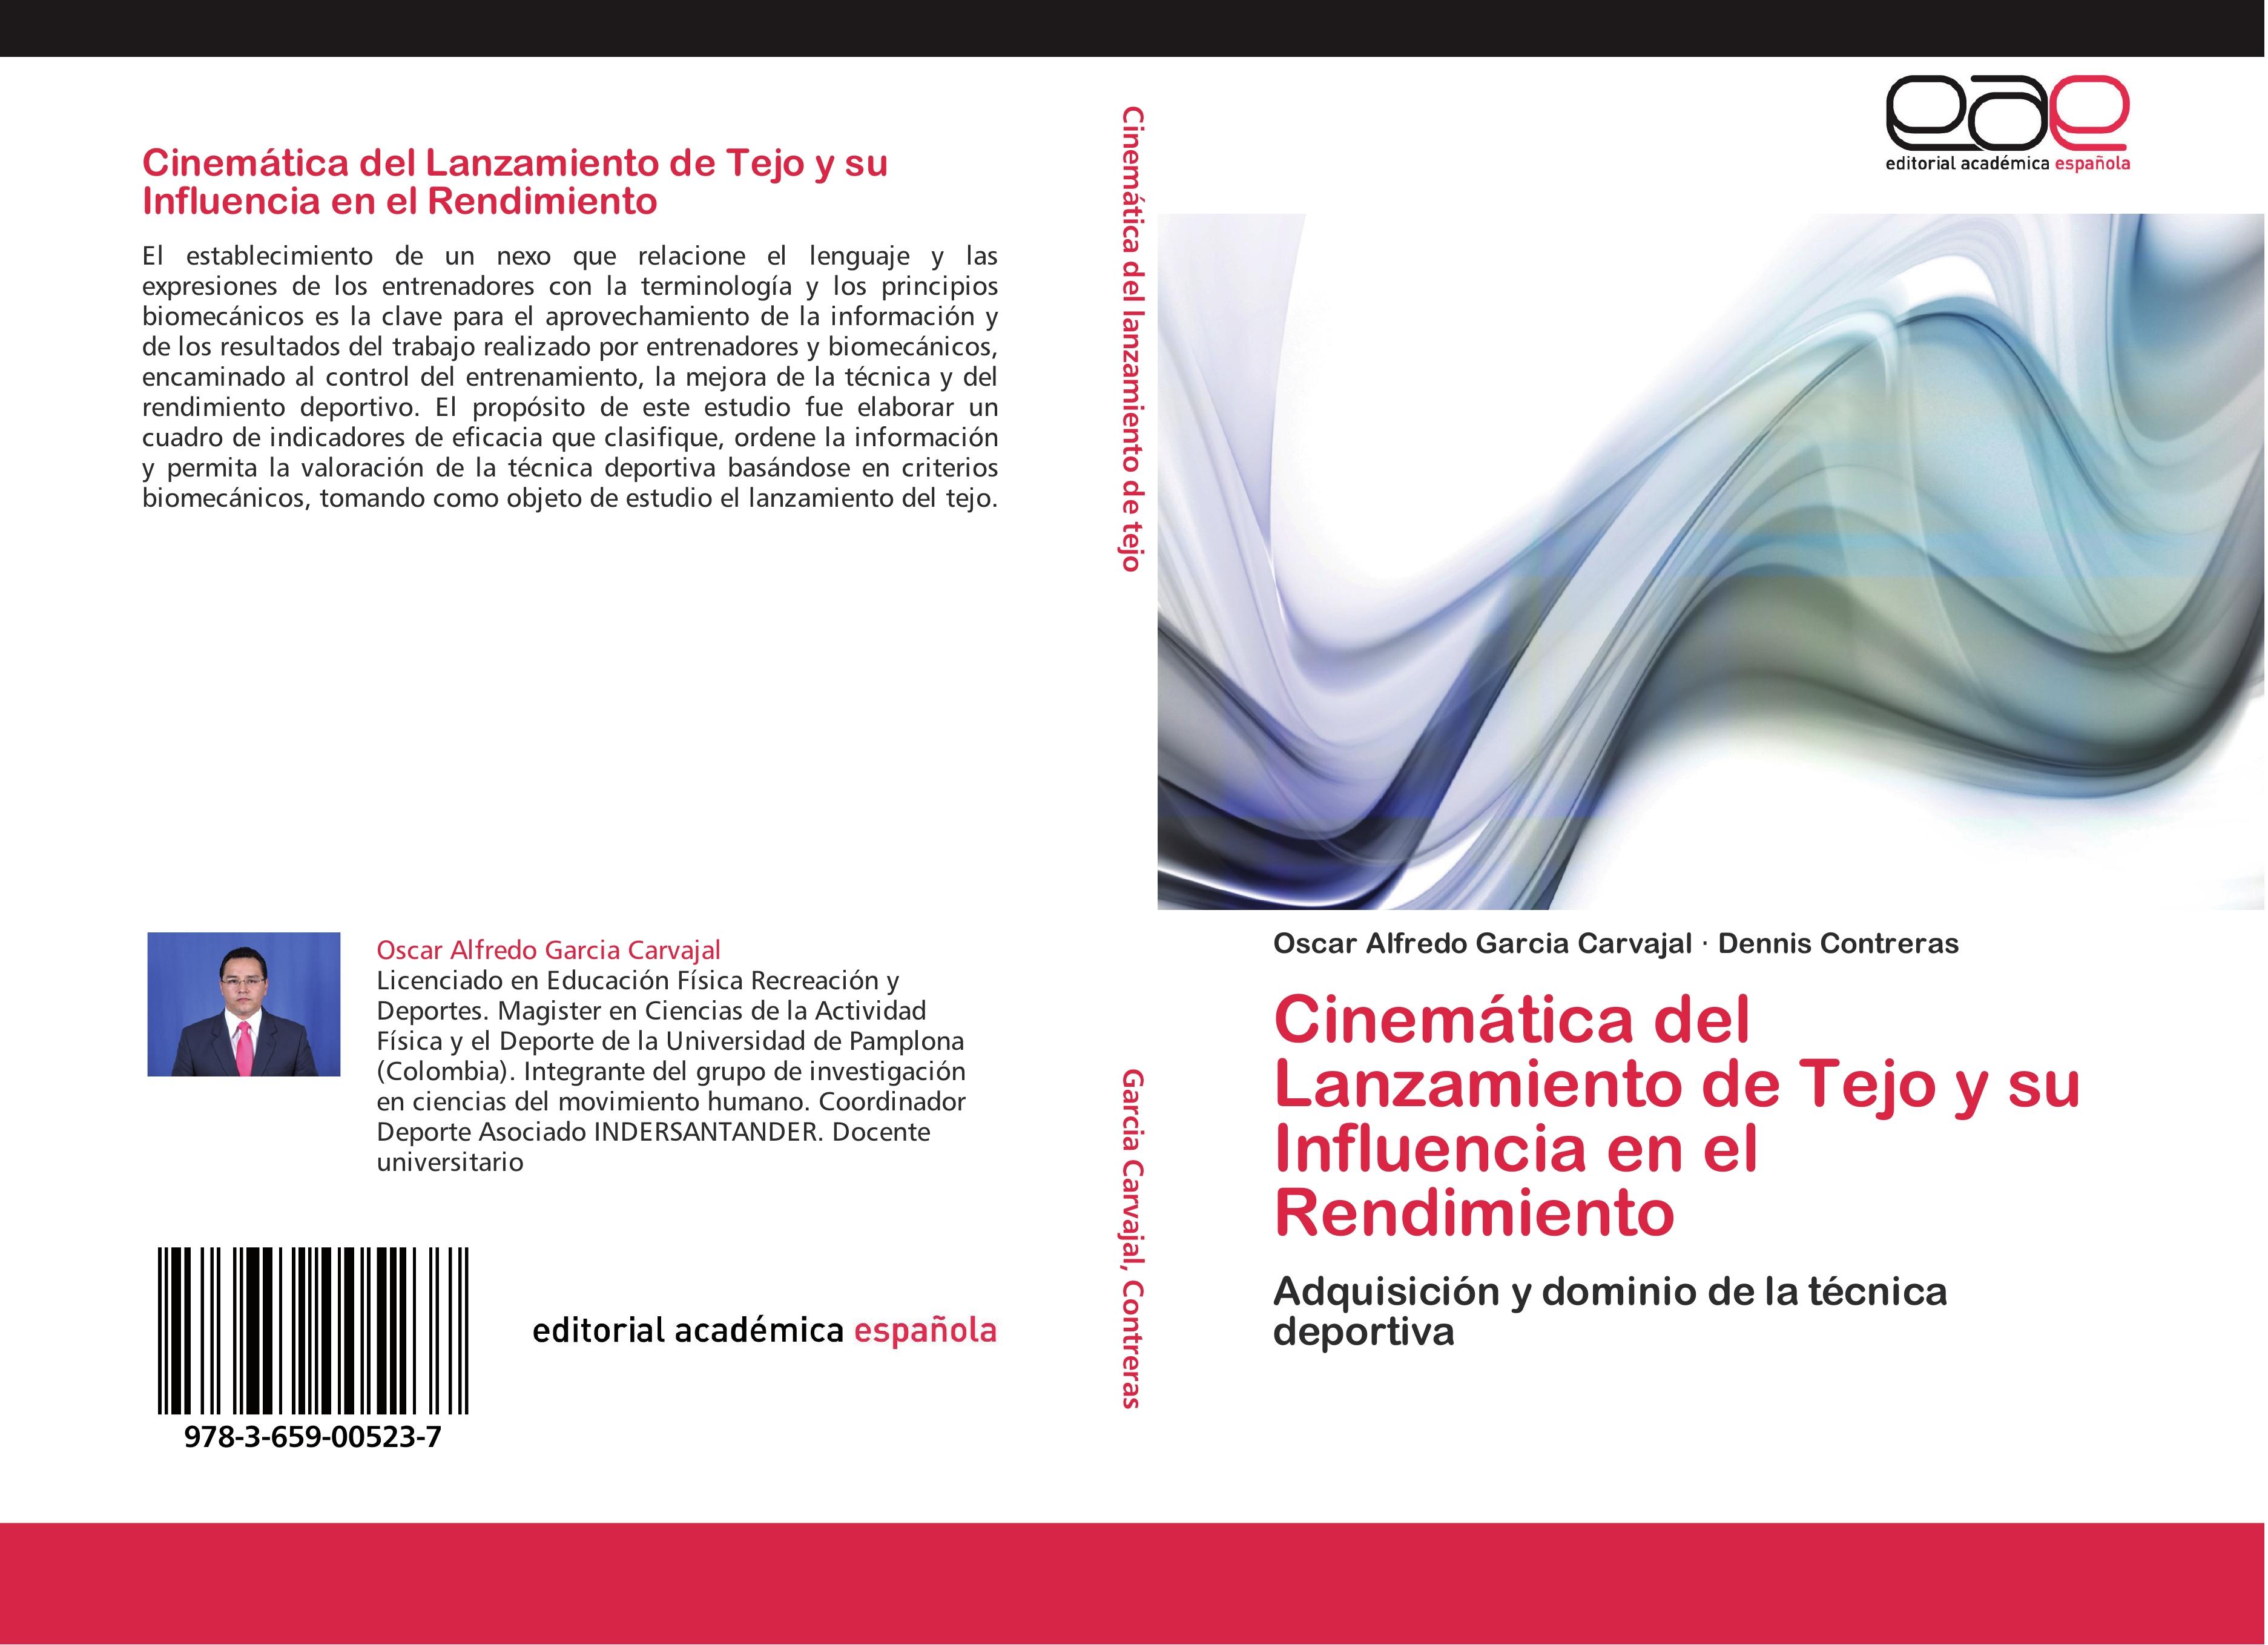 CinemÃ¡tica del Lanzamiento de Tejo y su Influencia en el Rendimiento - Oscar Alfredo Garcia Carvajal|Dennis Contreras